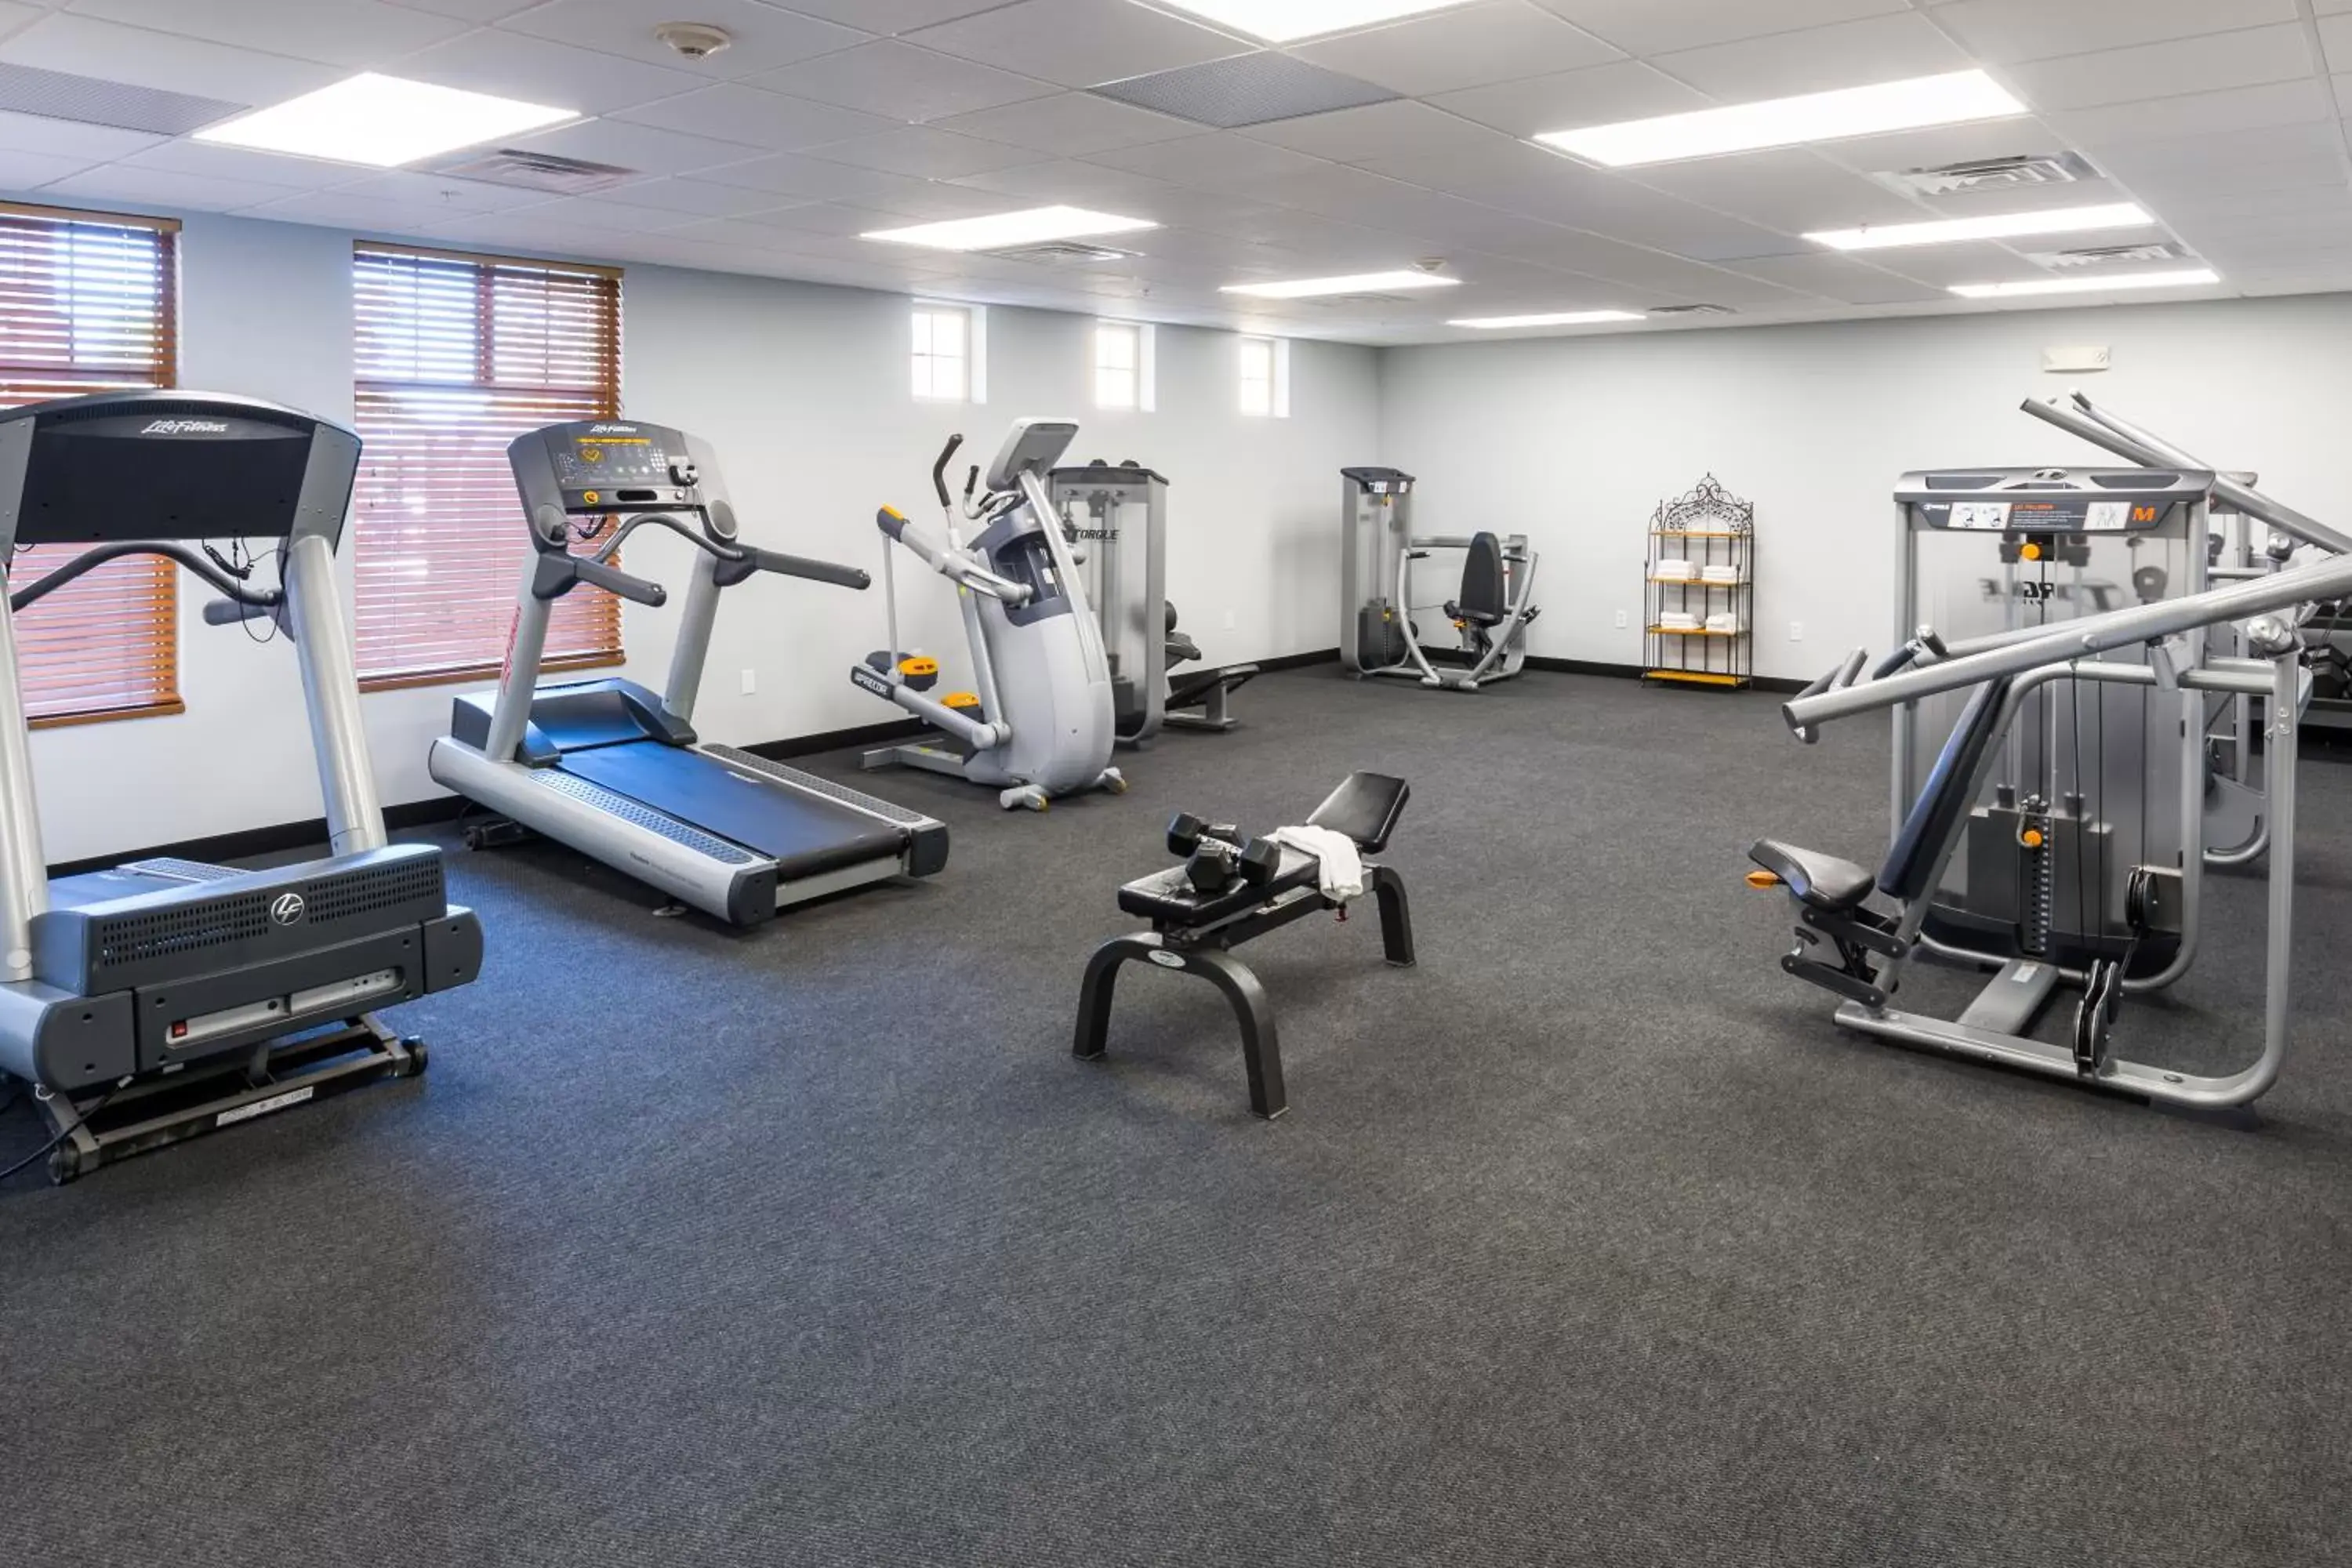 Fitness centre/facilities, Fitness Center/Facilities in Bridges Bay Resort